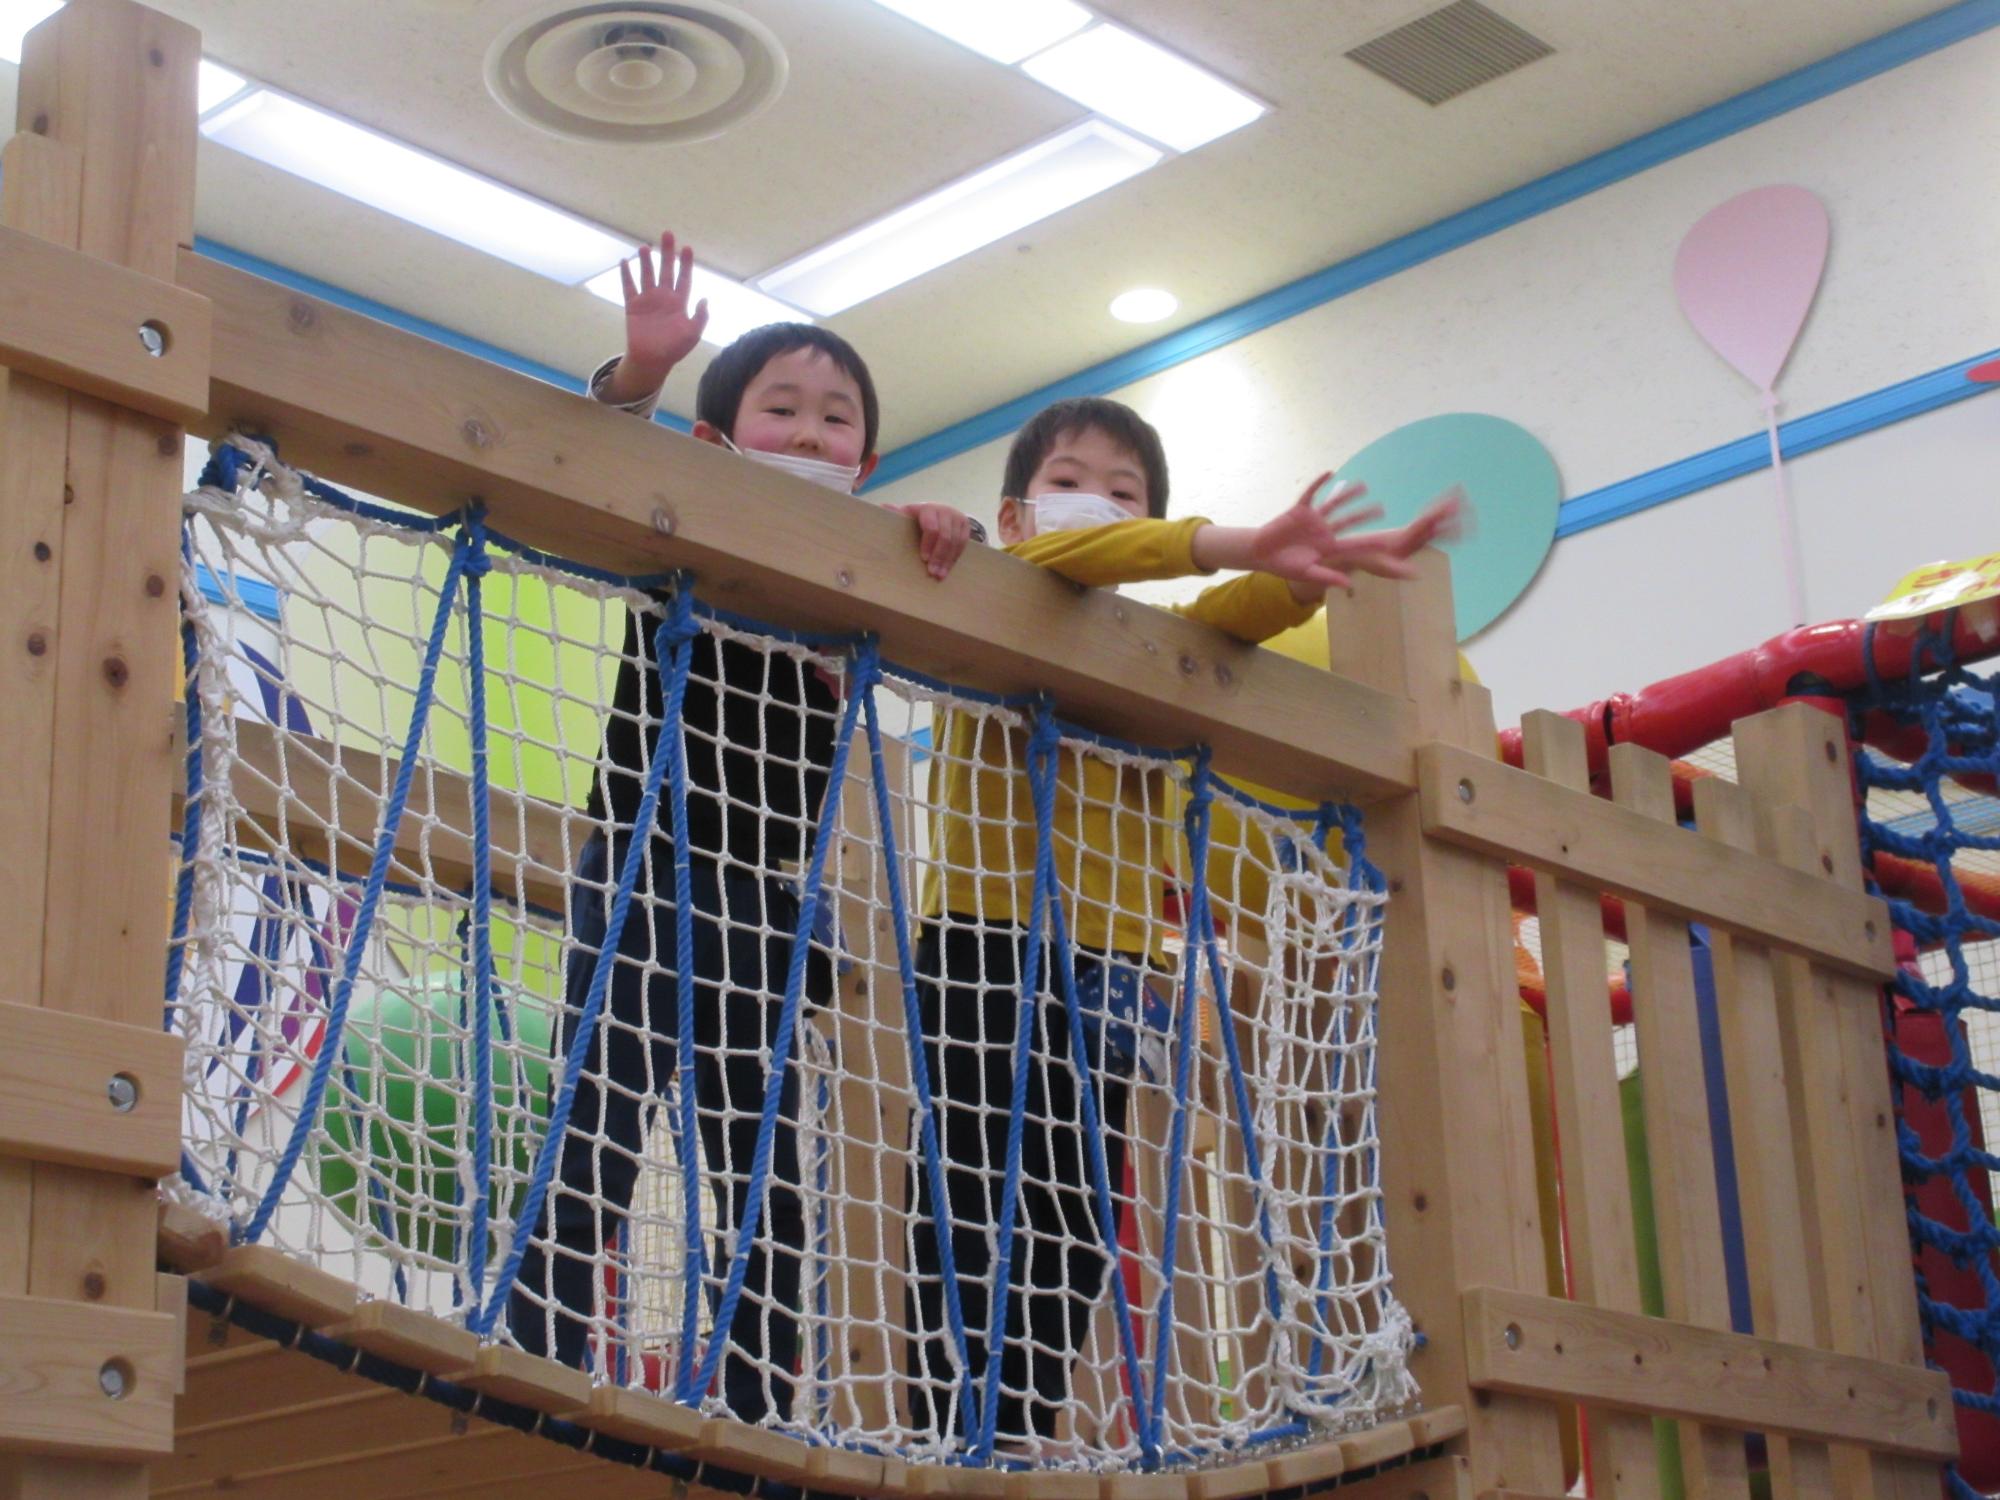 網と木で出来たつり橋のような遊具の上から園児2名が顔を出している写真